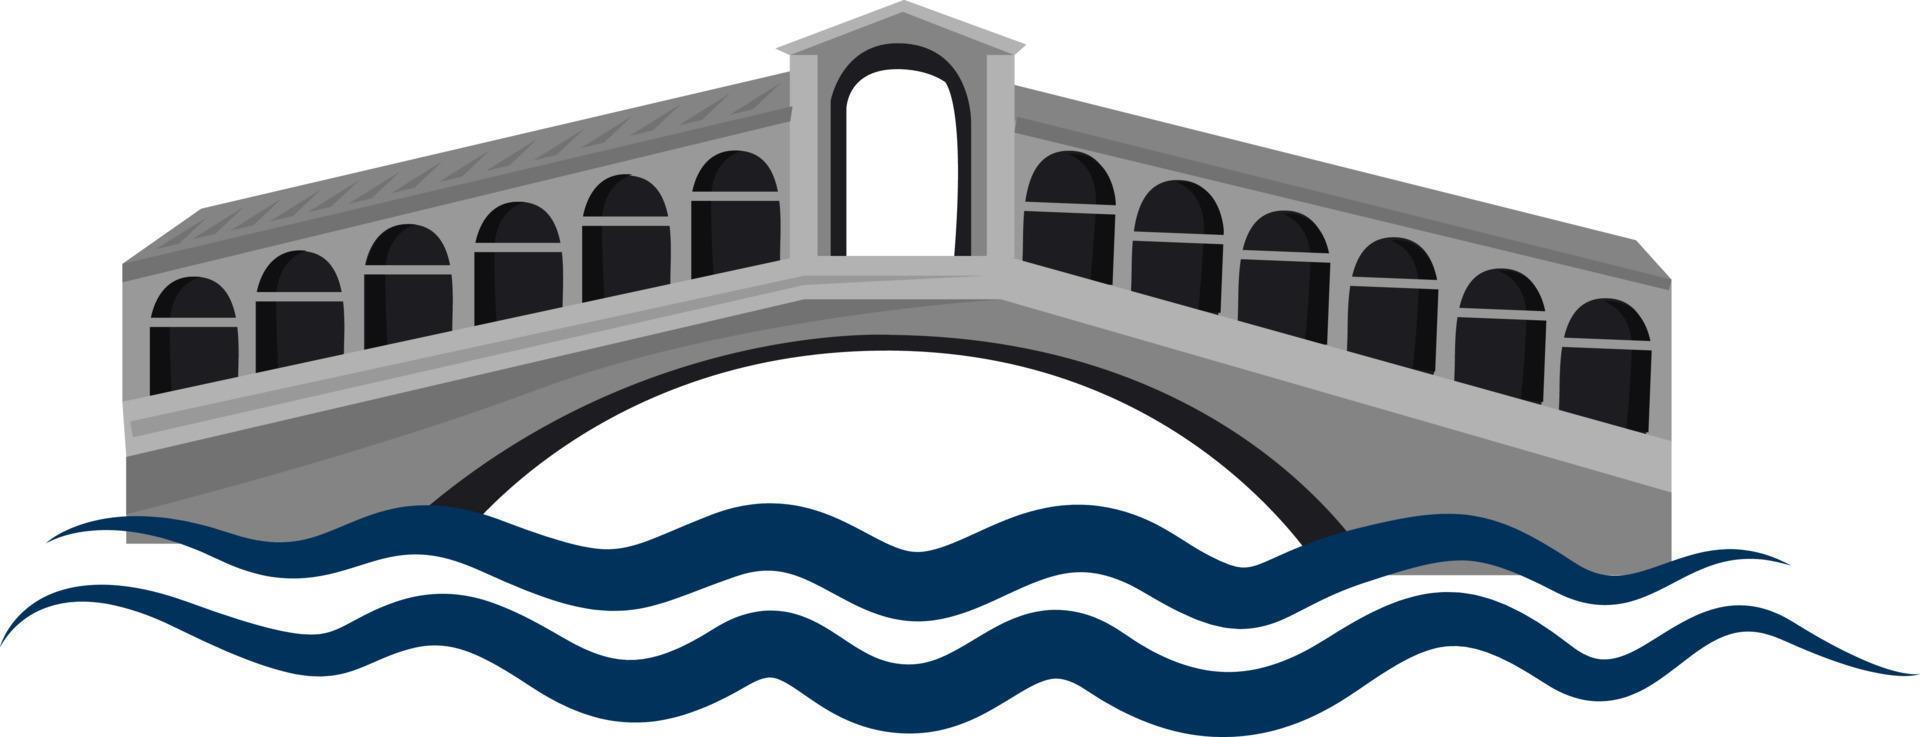 Puente de Riatlo, ilustración, vector sobre fondo blanco.